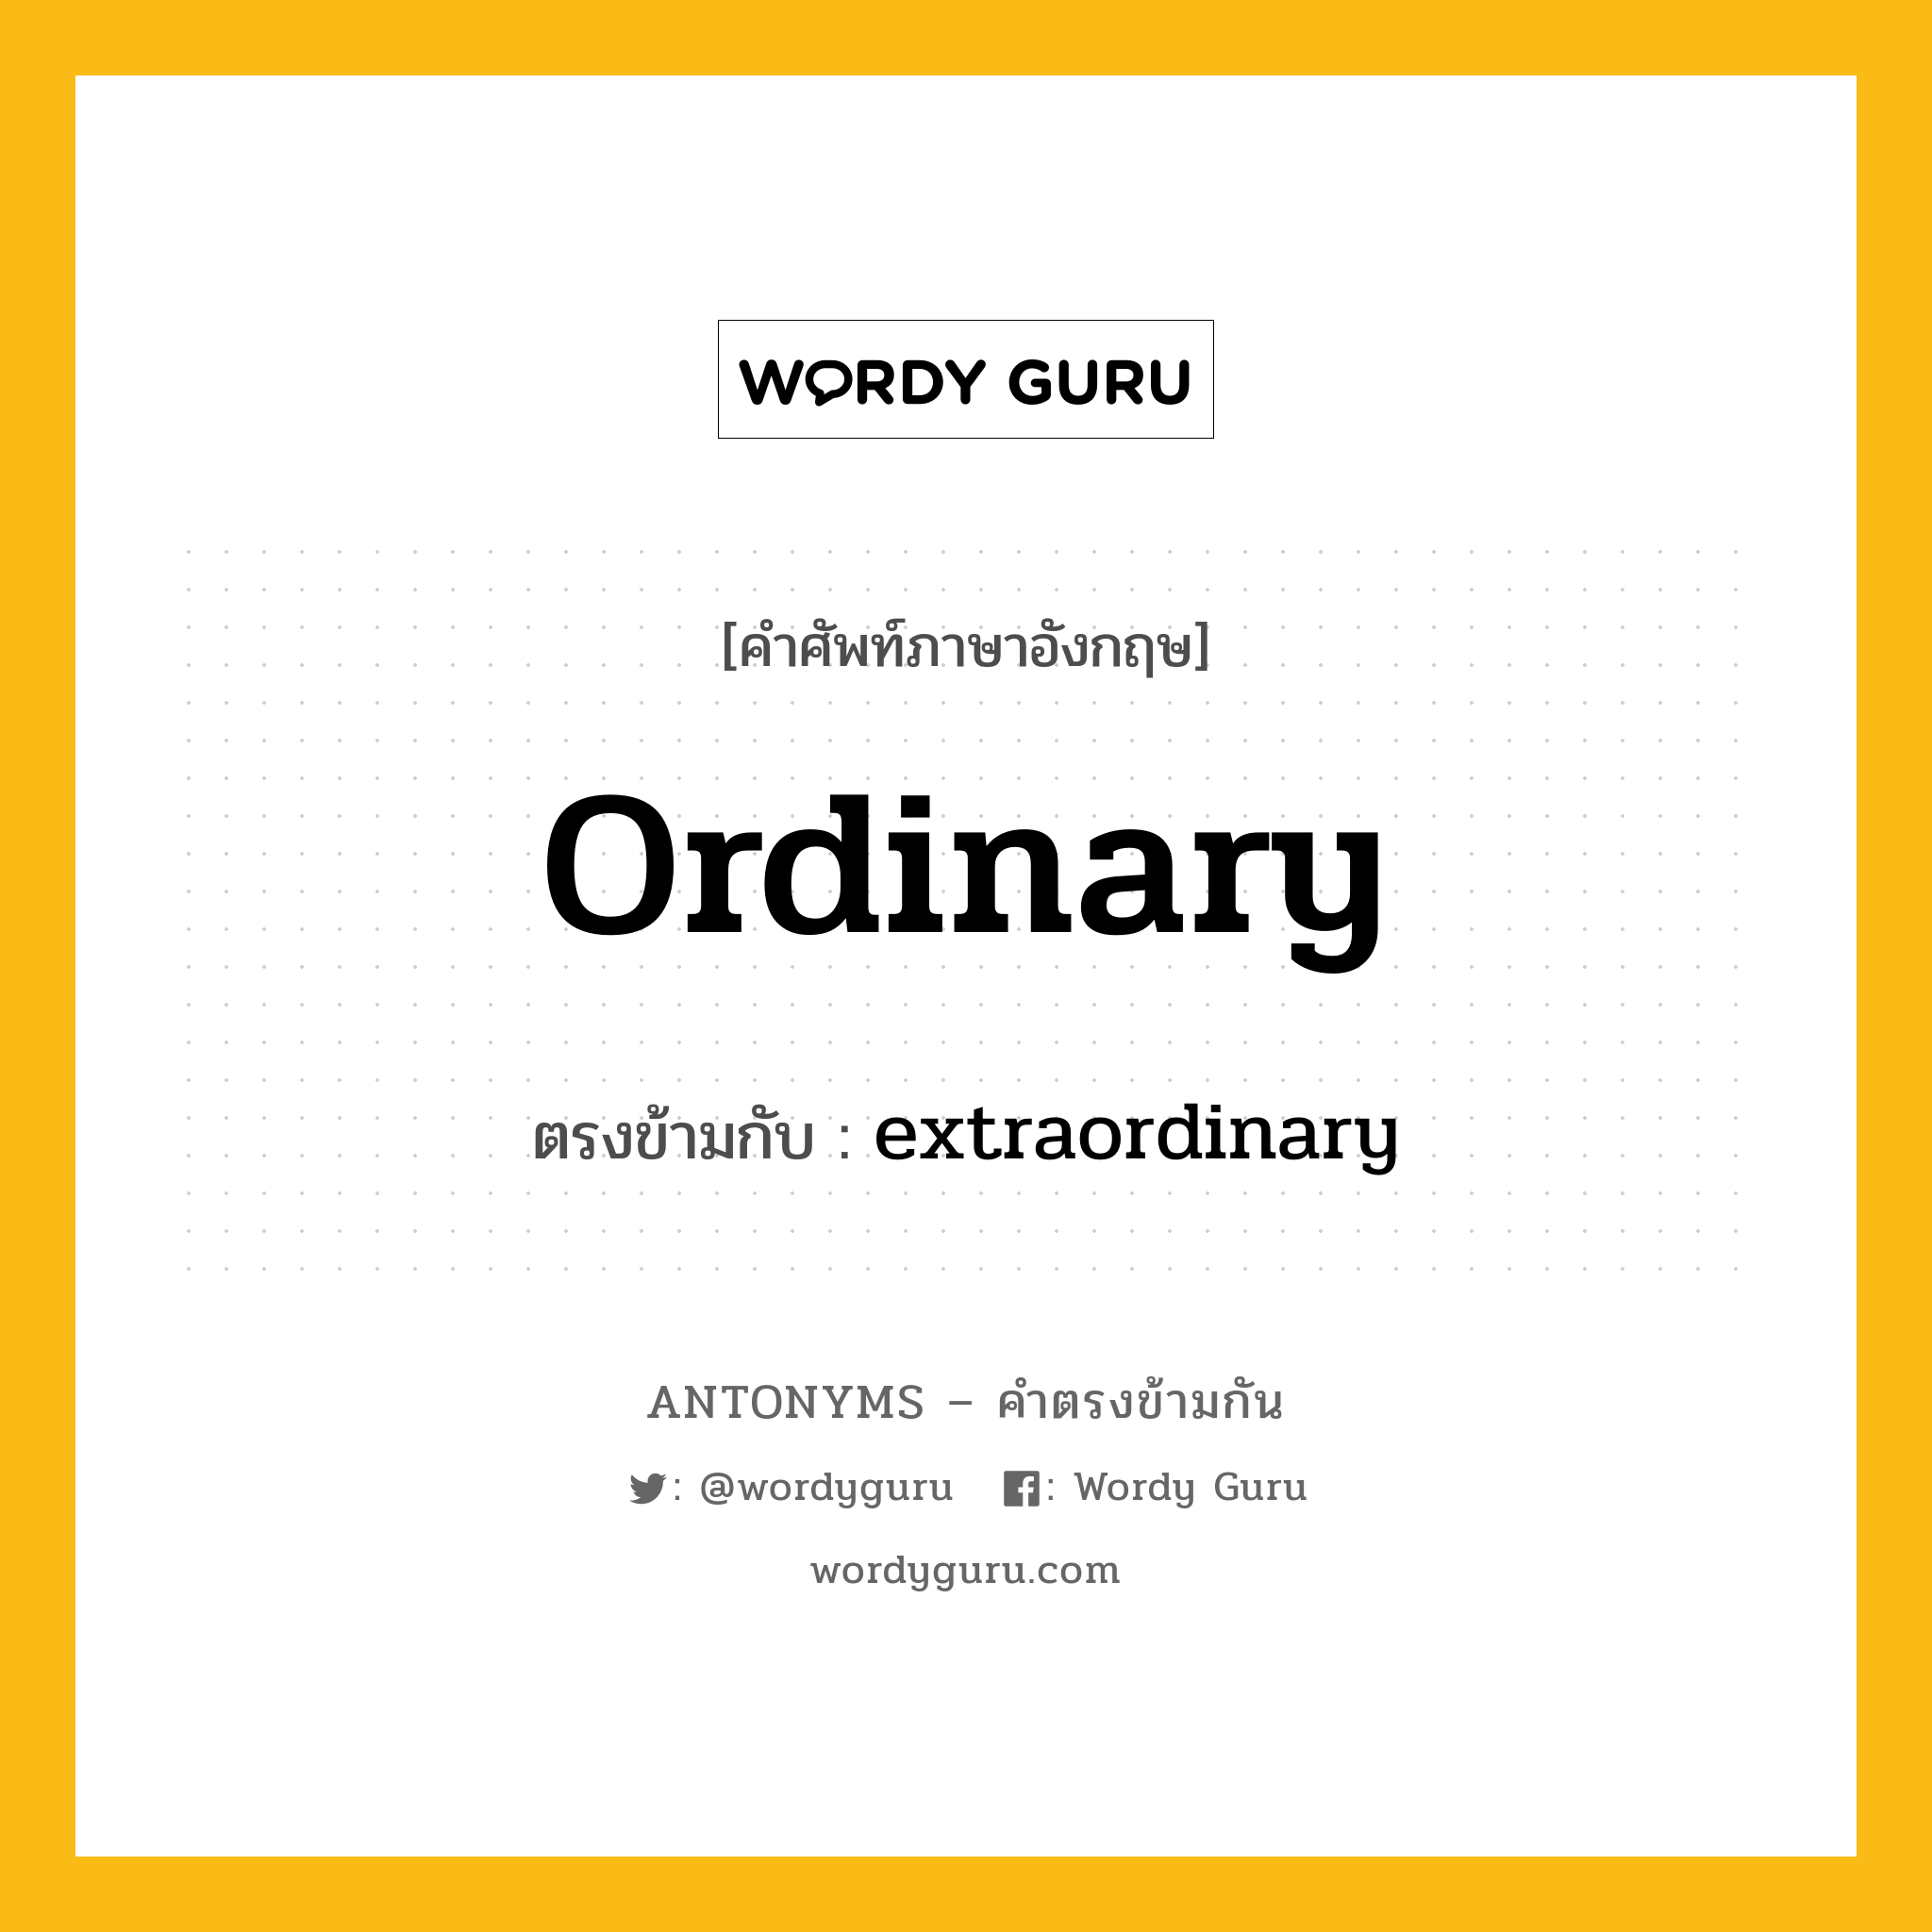 ordinary เป็นคำตรงข้ามกับคำไหนบ้าง?, คำศัพท์ภาษาอังกฤษ ordinary ตรงข้ามกับ extraordinary หมวด extraordinary